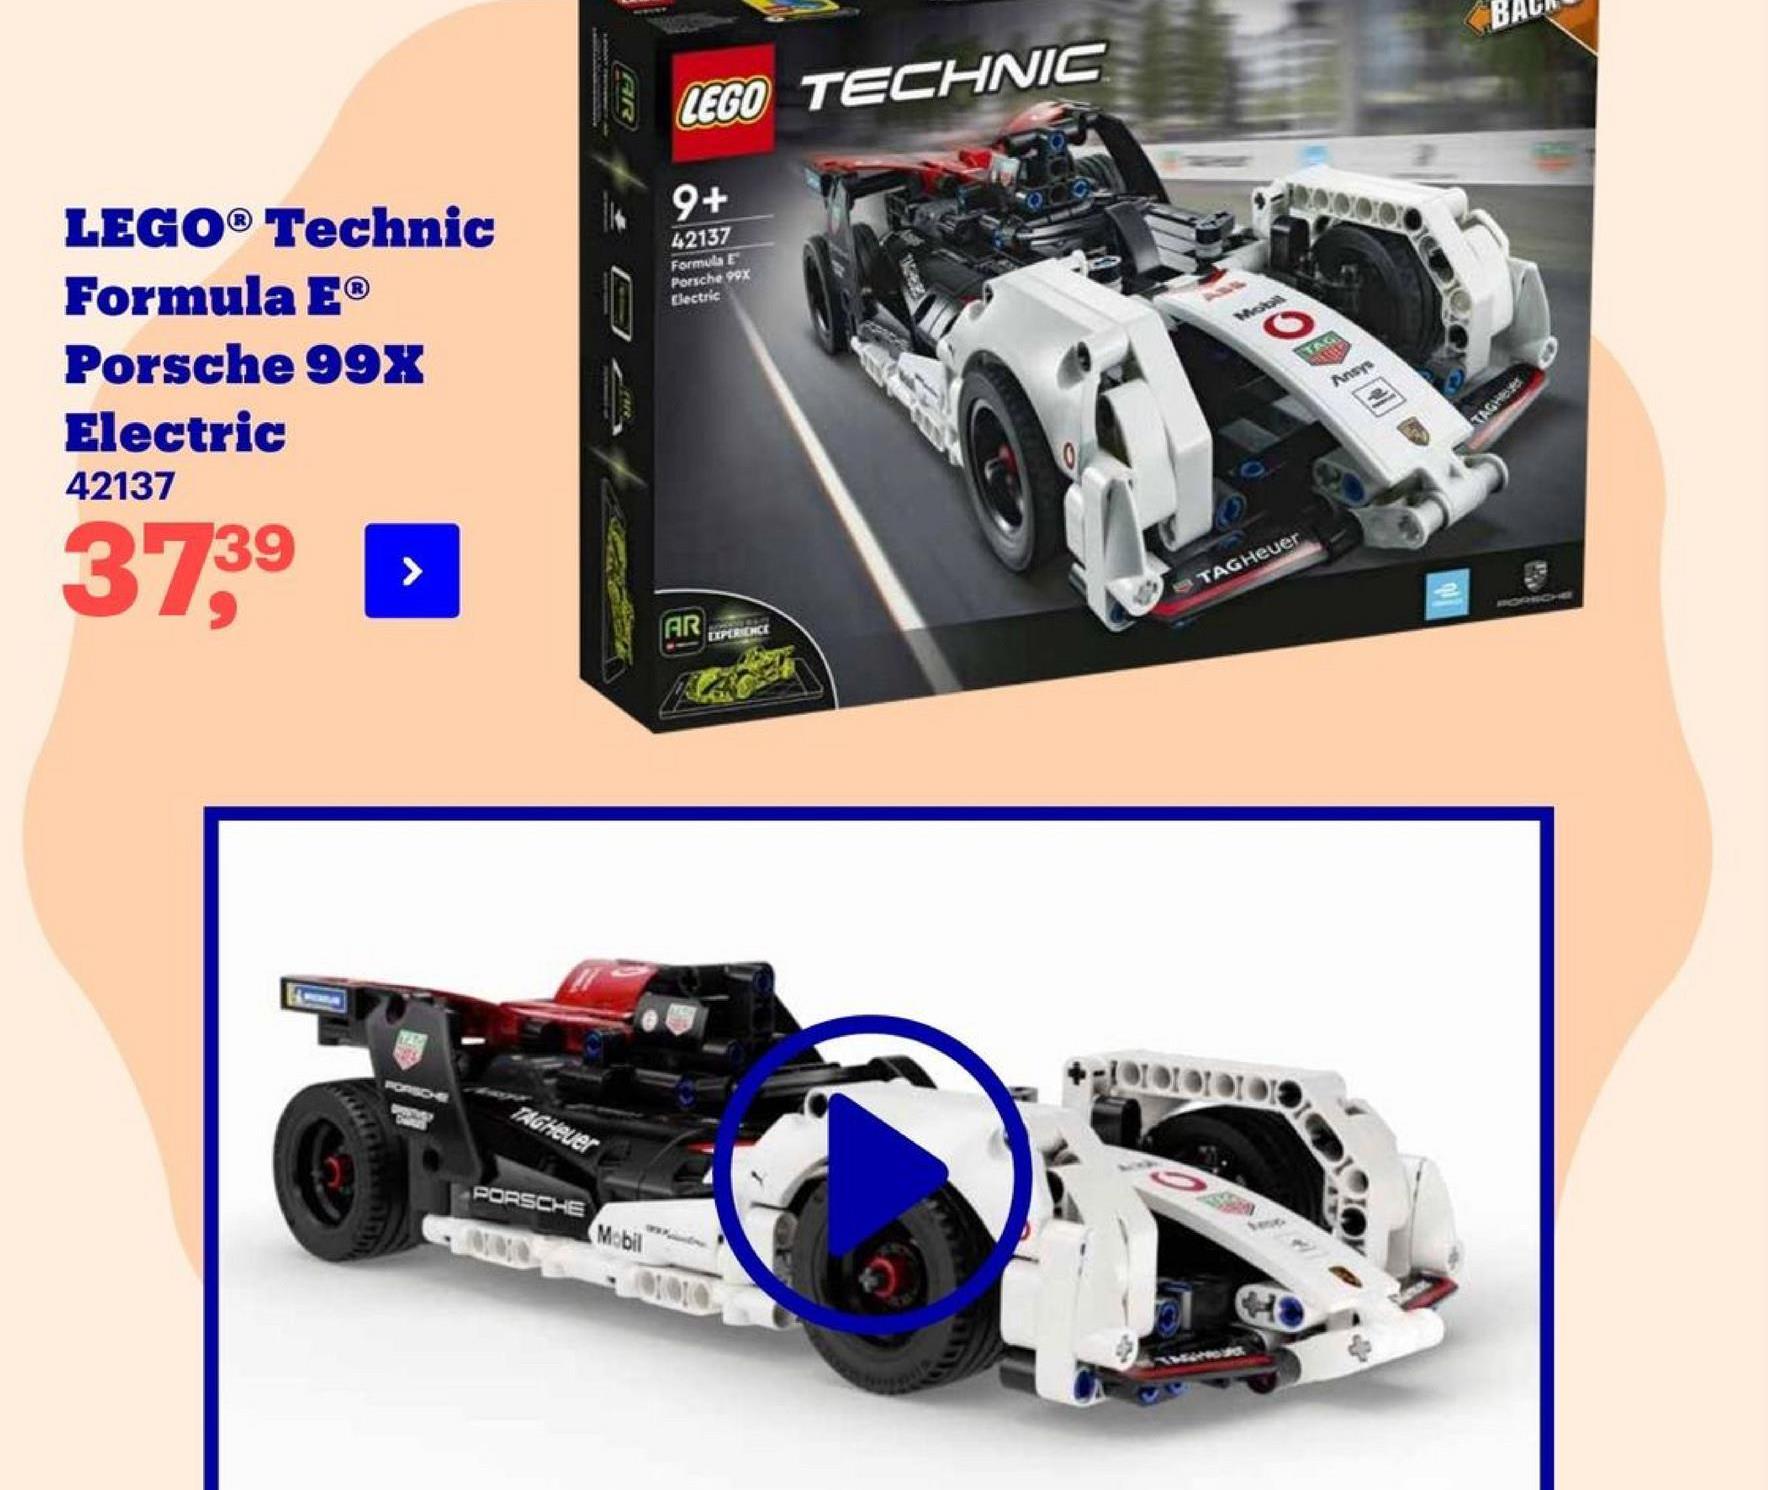 LEGO TECHNIC
9+
42137
Formula E
Porsche 99x
Llectric
JODOC
LEGO® Technic
Formula EⓇ
Porsche 99X
Electric
42137
0
3739
TAG Heuer
KO
AR
DIPERENCE
TAGHeuer
PORSCHE
Mobil
ODIO
